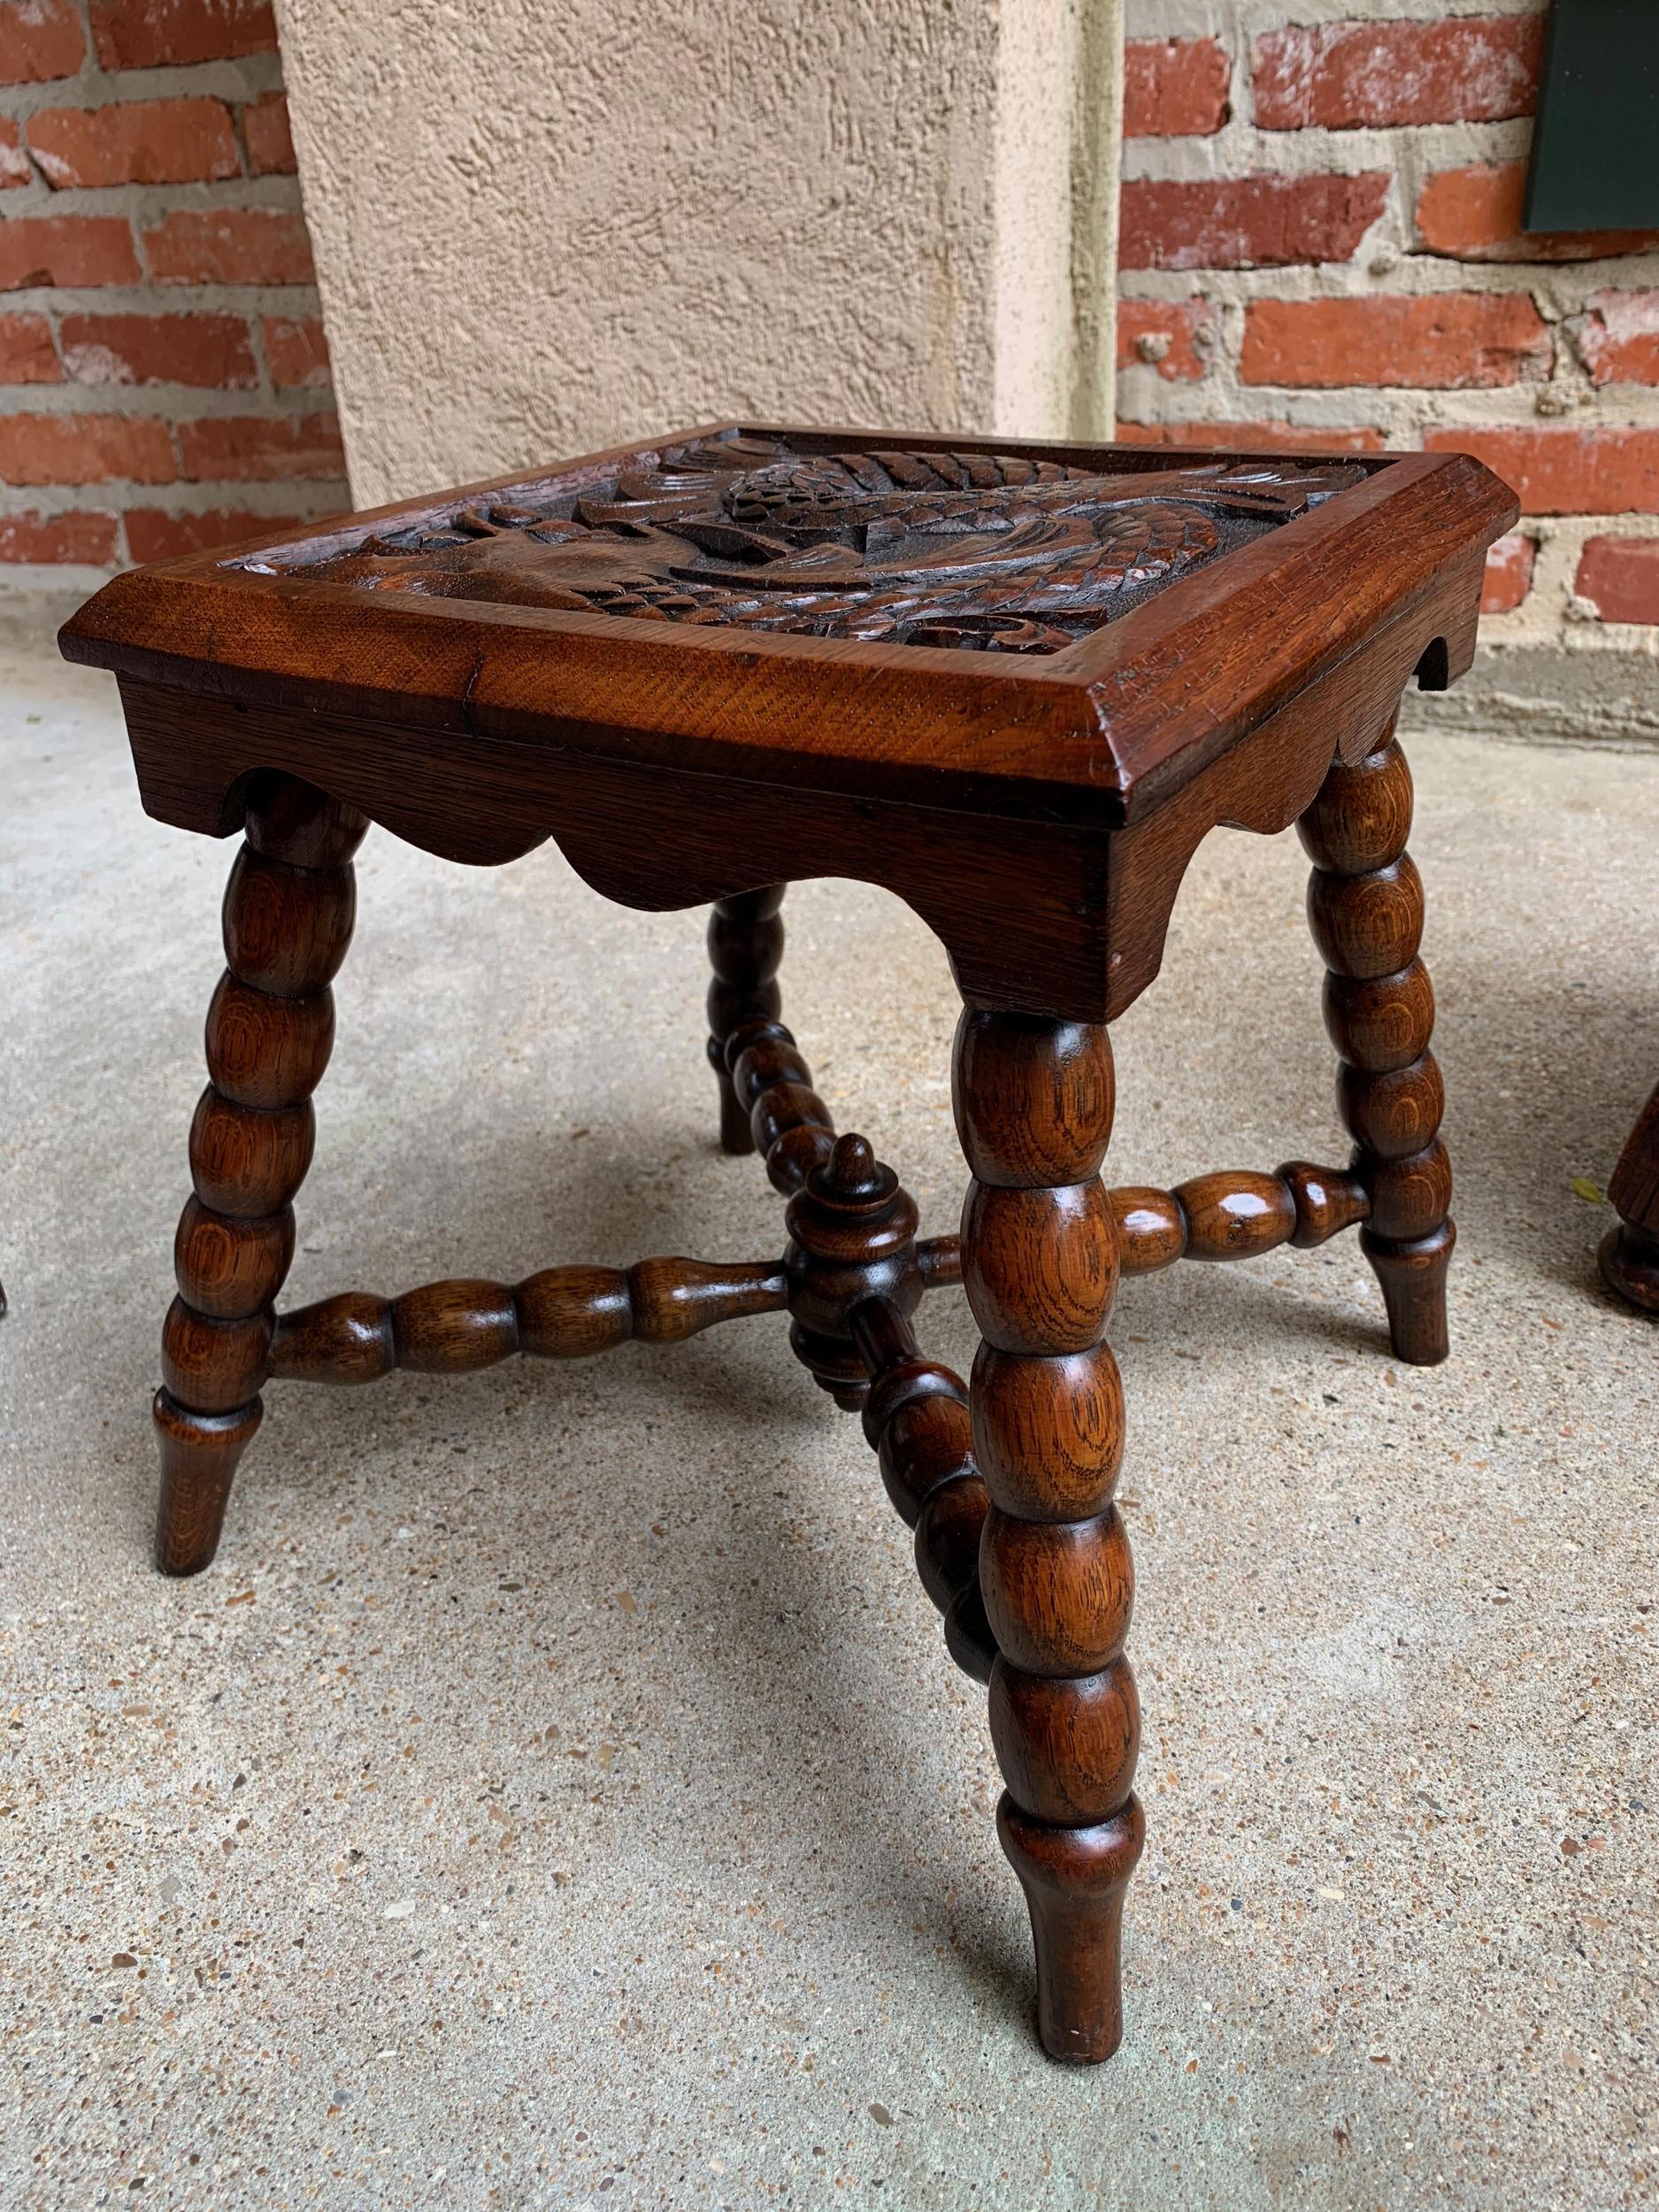 Ancienne table d'extrémité de banc ou bout de table carrée sculptée anglaise Renaissance  1